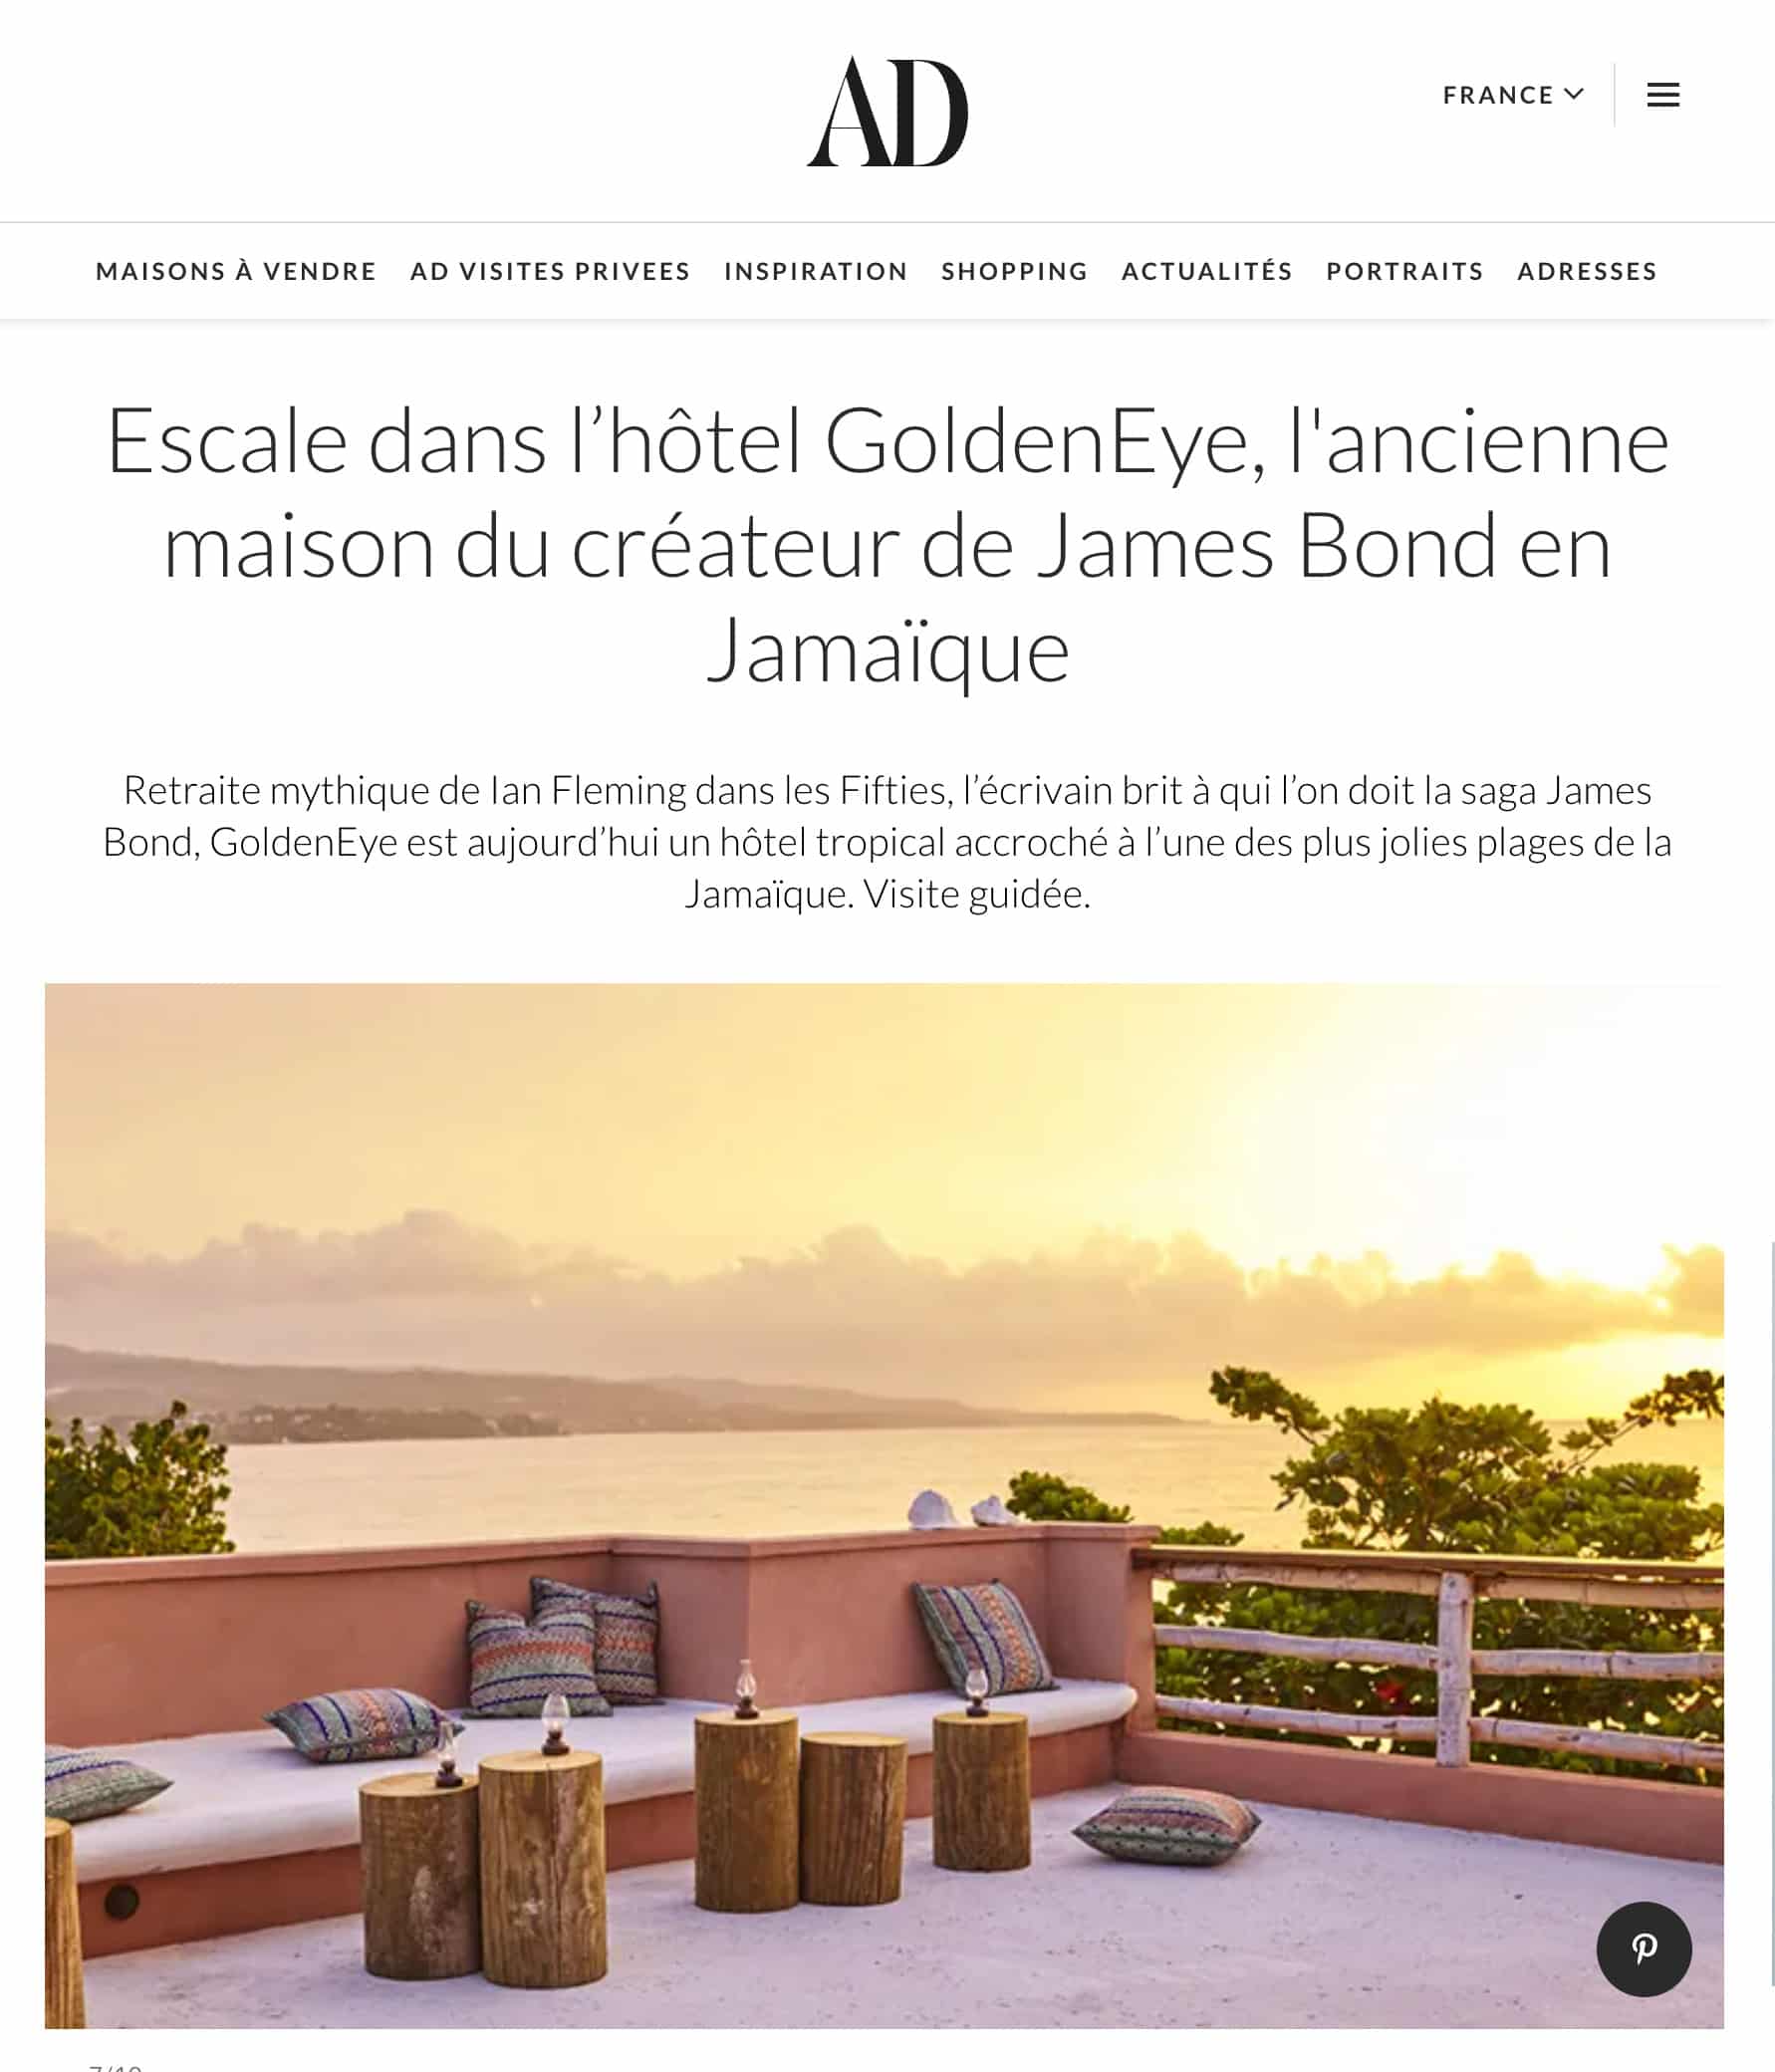 AD Magazine Escale dans lhotel GoldenEye lancienne maison du createur de James Bond en Jamaique